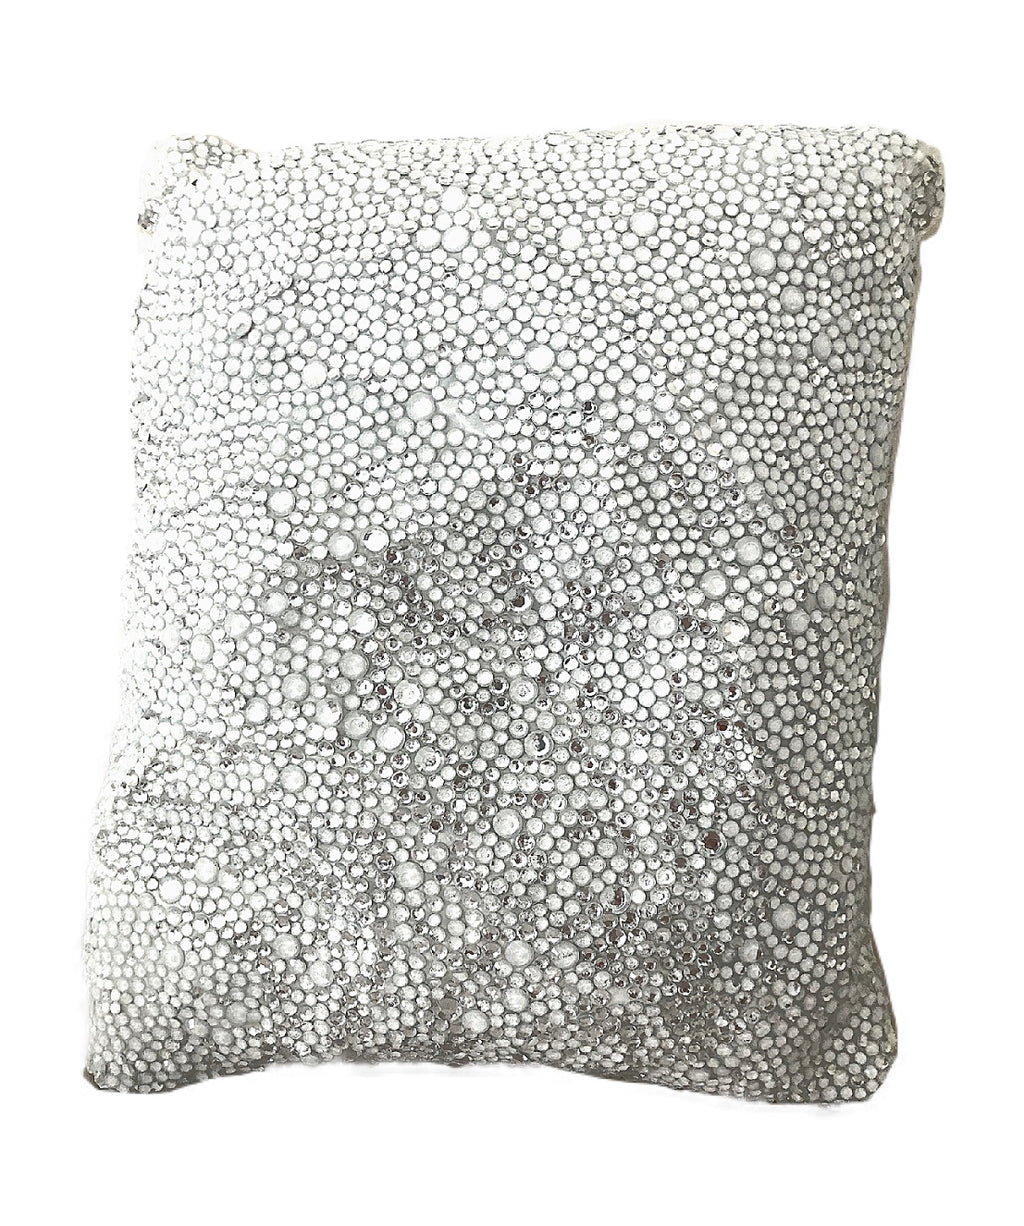 Heir Chrystal - Hand Beaded Decorative Throw Pillow